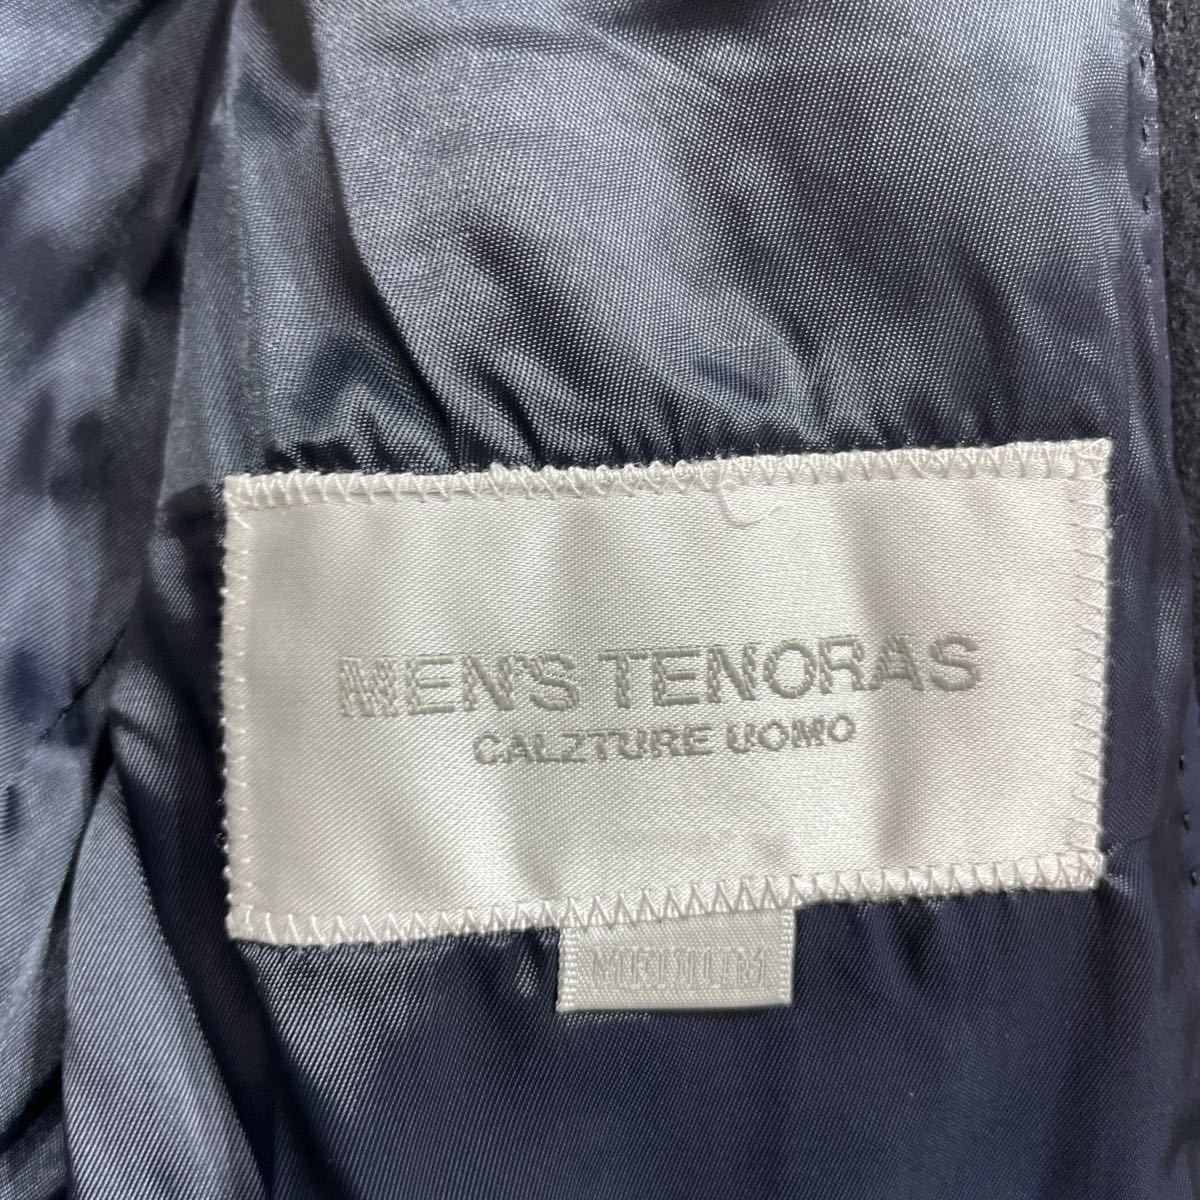 EE MEN'S TENORAS メンズ ティノラス ウール アンゴラ チェスターコート ロングコート サイズM ベルト付 31116D_画像7